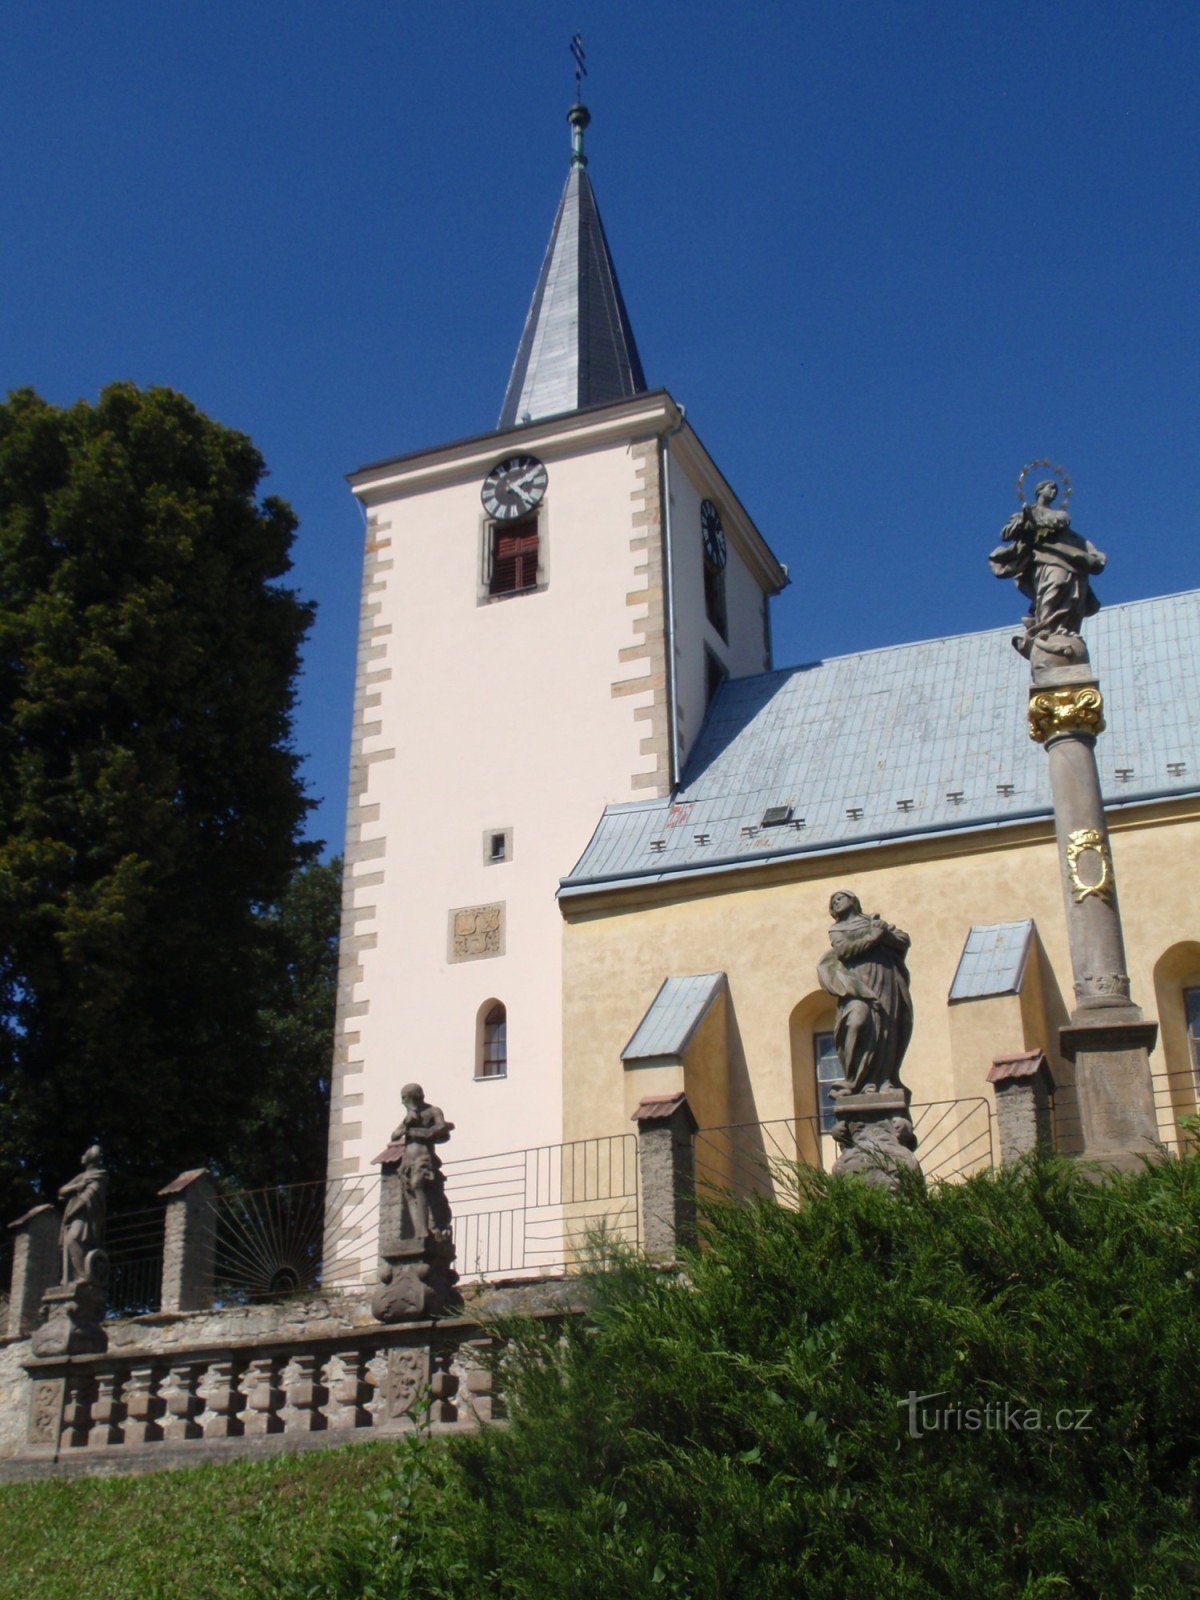 Cerkev sv. Jiříja v Kunčinu